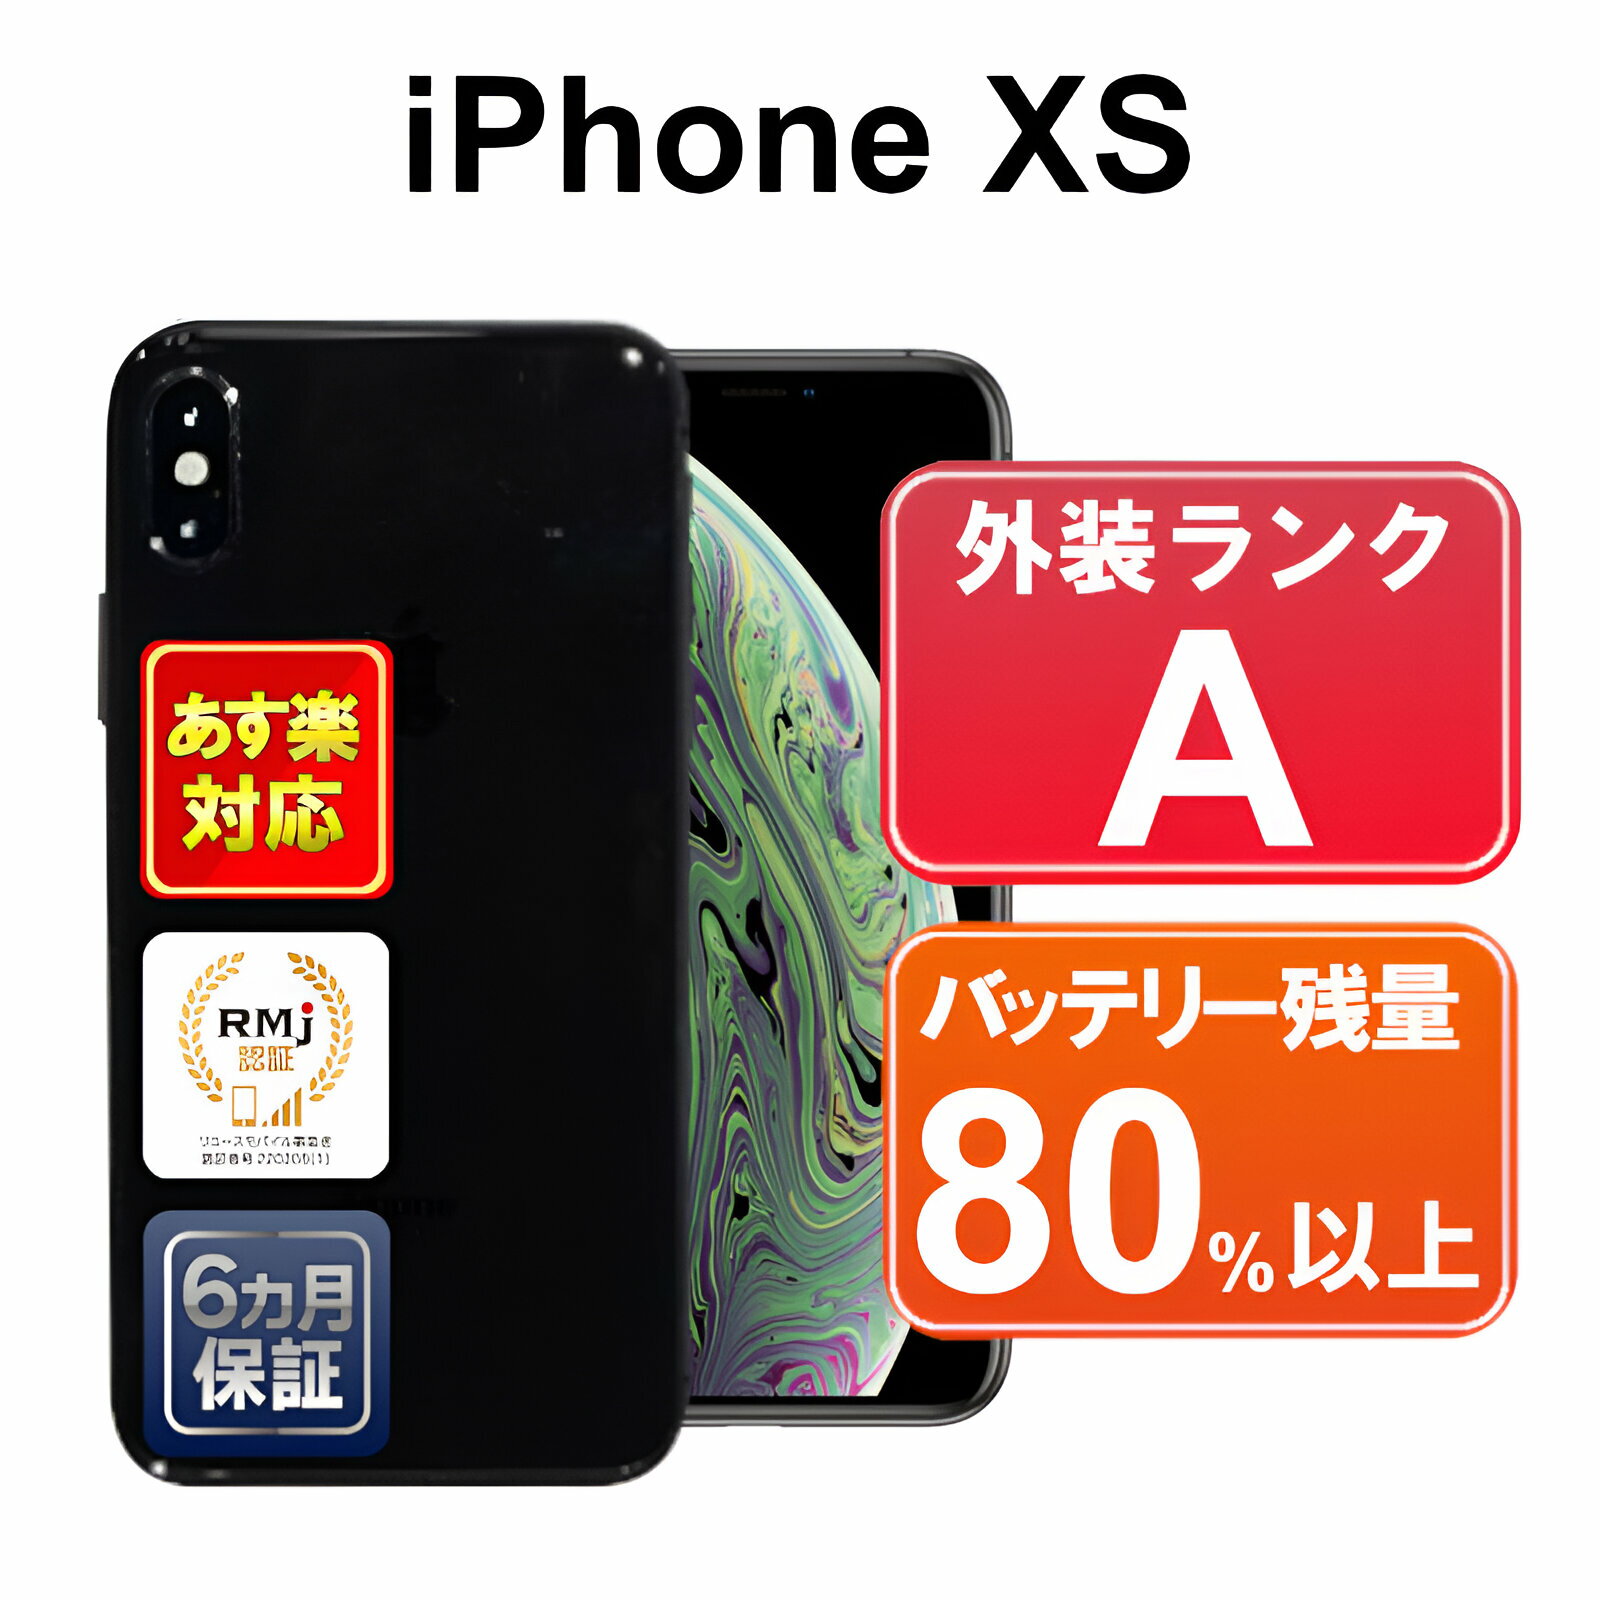 iPhone XS 256GB中古 スマホ 白ロム Apple docomo MTE02J/A スペースグレイ iOS SIMロック解除済 付属品無 6ヶ月保証 赤ロム保証 スマフォ